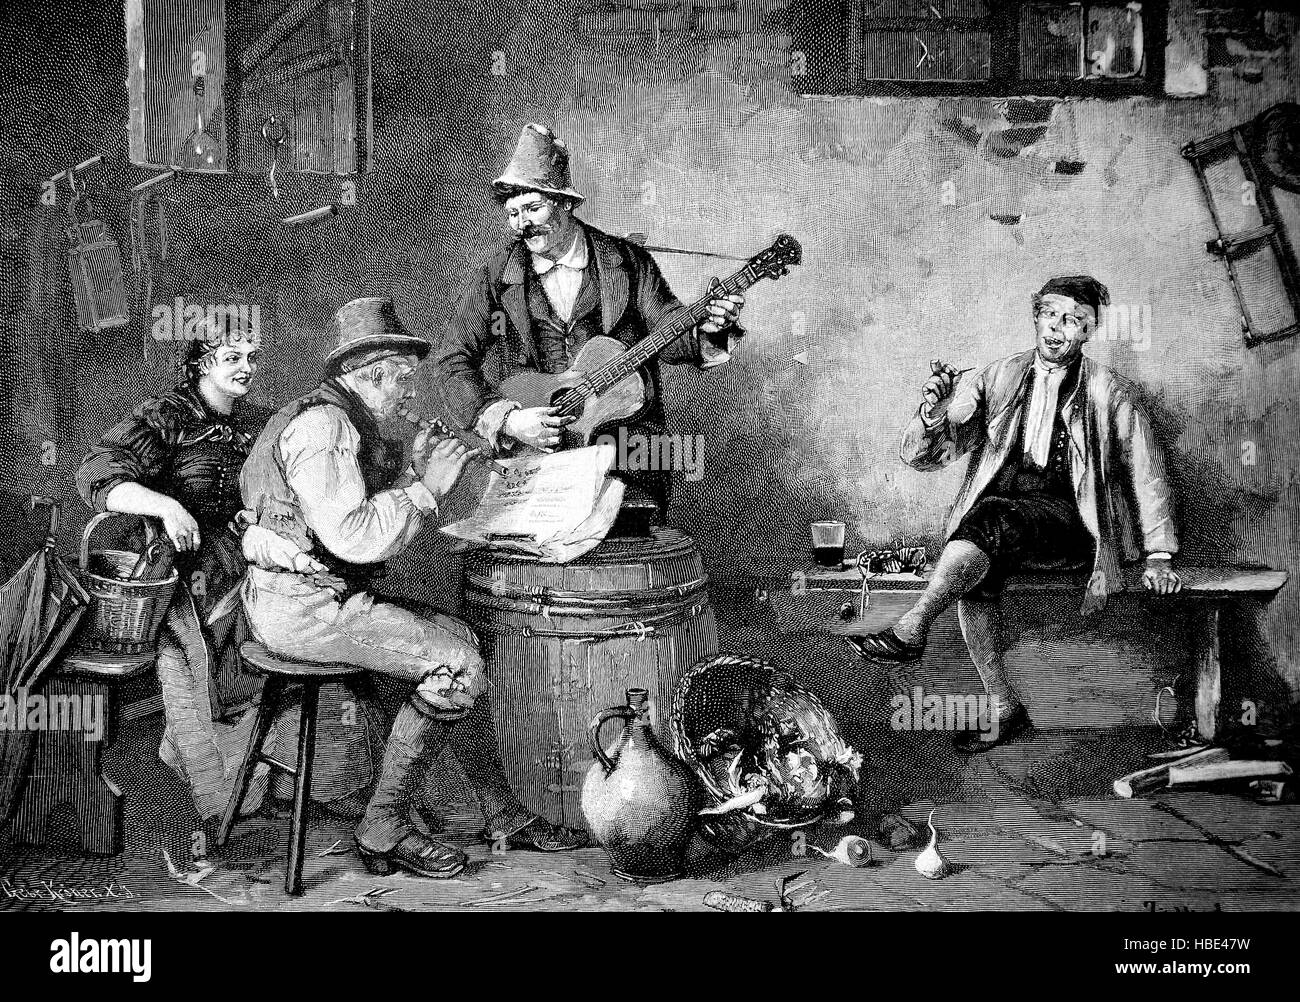 Zwei Männer machen House-Musik mit Querflöte und Gitarre, in einem ländlichen Raum im 19. Jahrhundert, Illustration, Holzschnitt aus dem Jahr 1880 Stockfoto